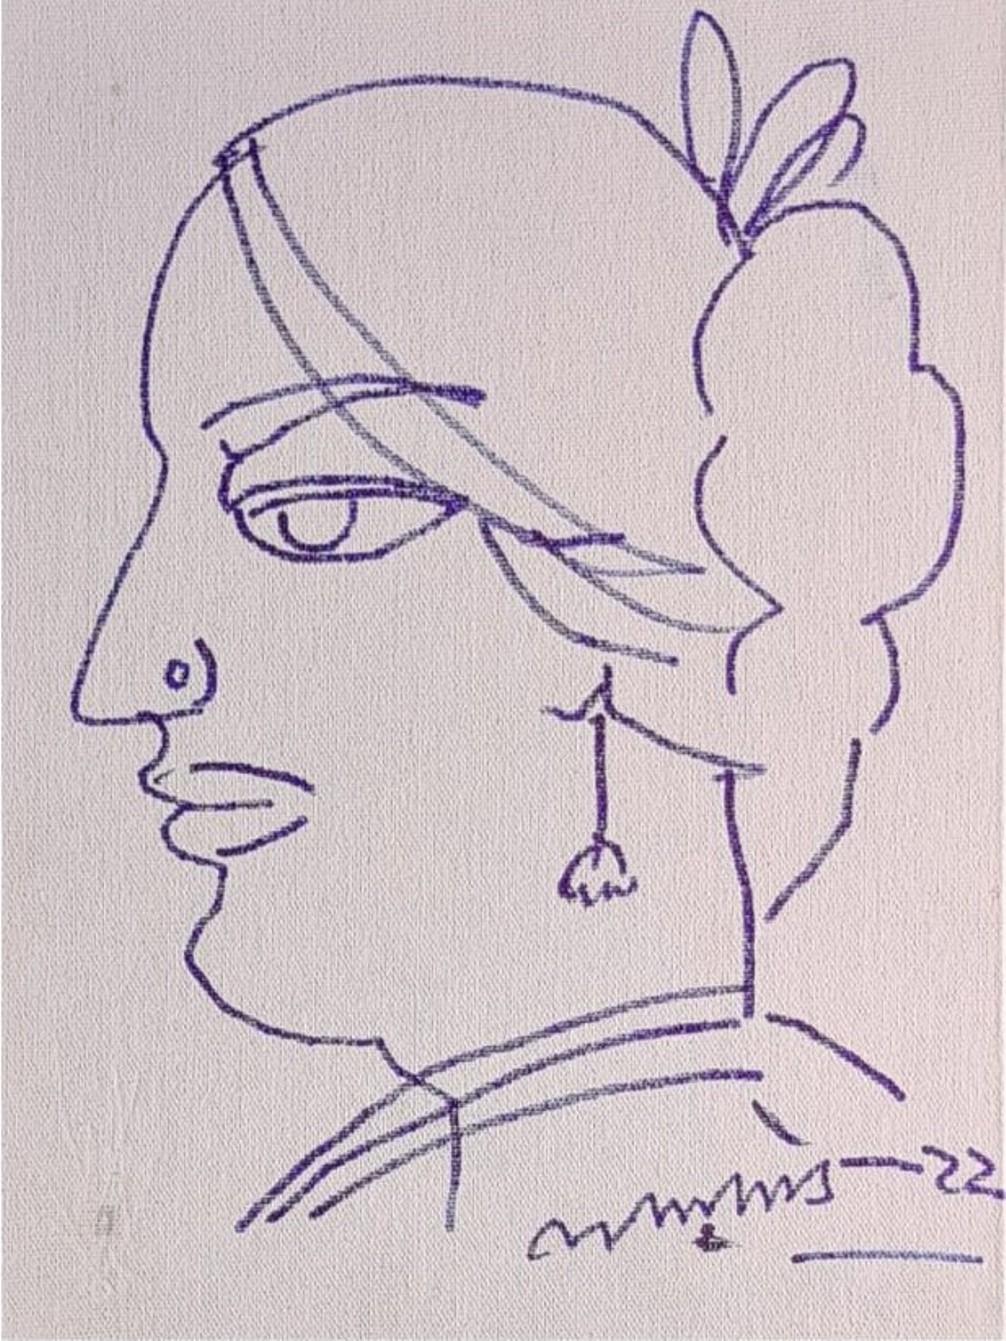 Lalu Prasad Shaw - Biwi  - 12 x 9 pouces
Encre sur toile, 2022
( Non encadré et livré )

Style : Connu pour ses portraits très stylisés de femmes et de couples bengalis, les œuvres de Lalu Prasad Shaw mettent l'accent sur les caractéristiques